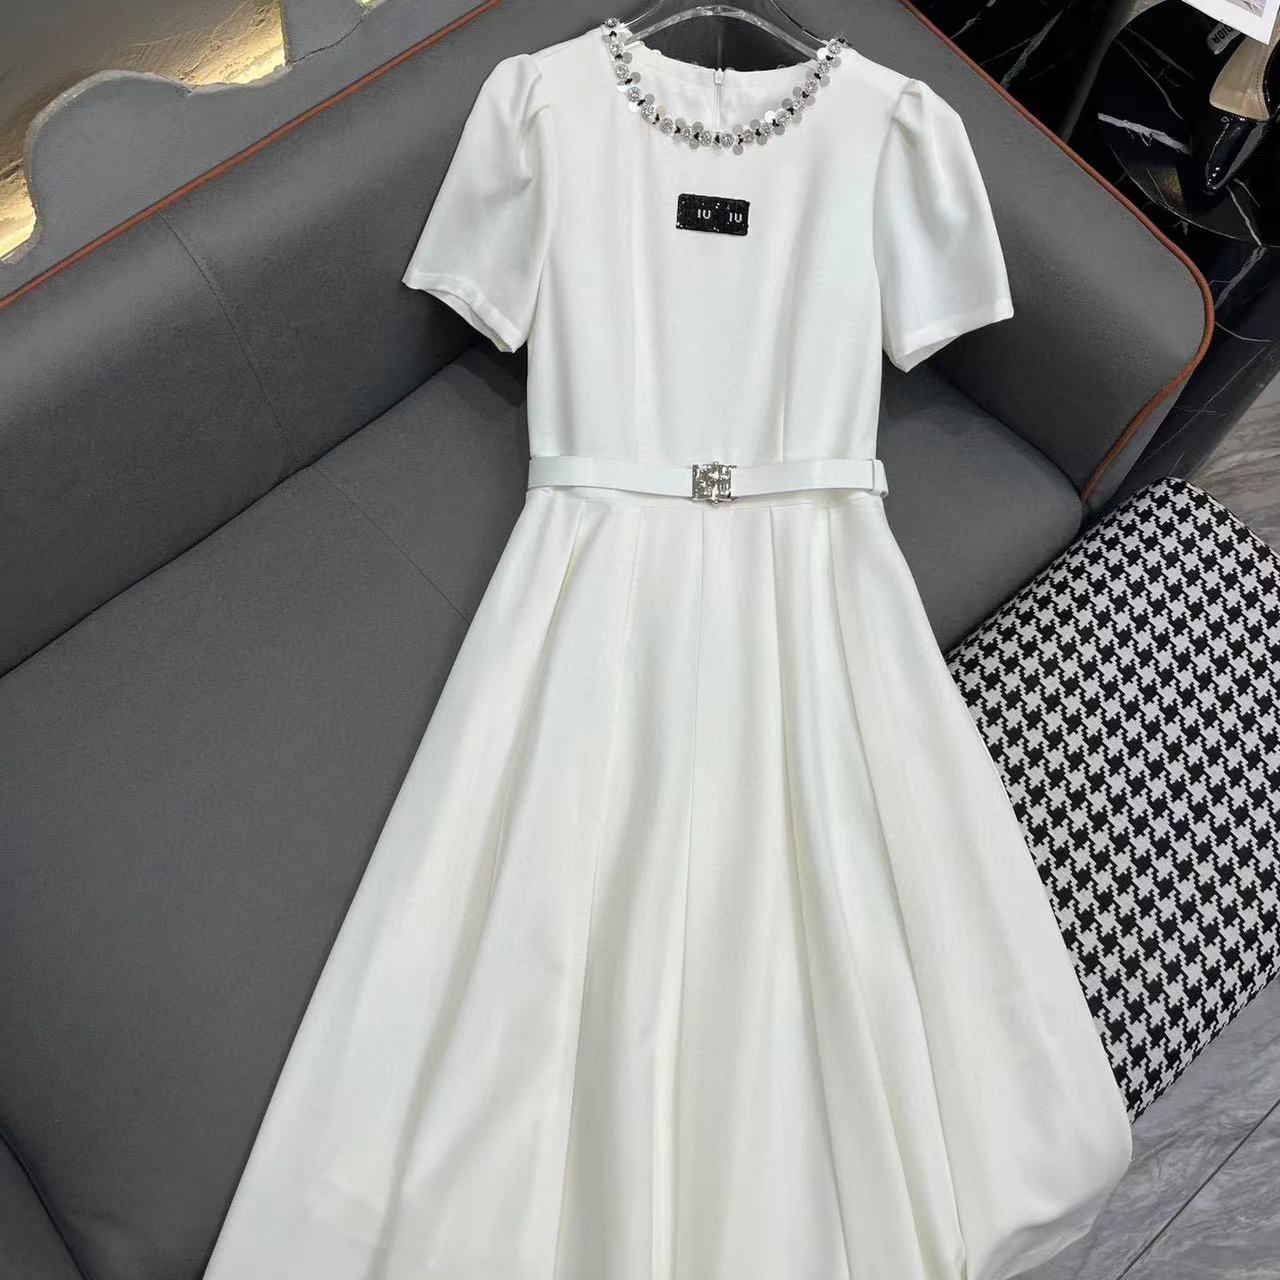 Moda lüks tasarımcı elbise iu titizlikle tasarlar boncuklar kemer elbisesi prenses tarzı ile küçük yuvarlak boyun